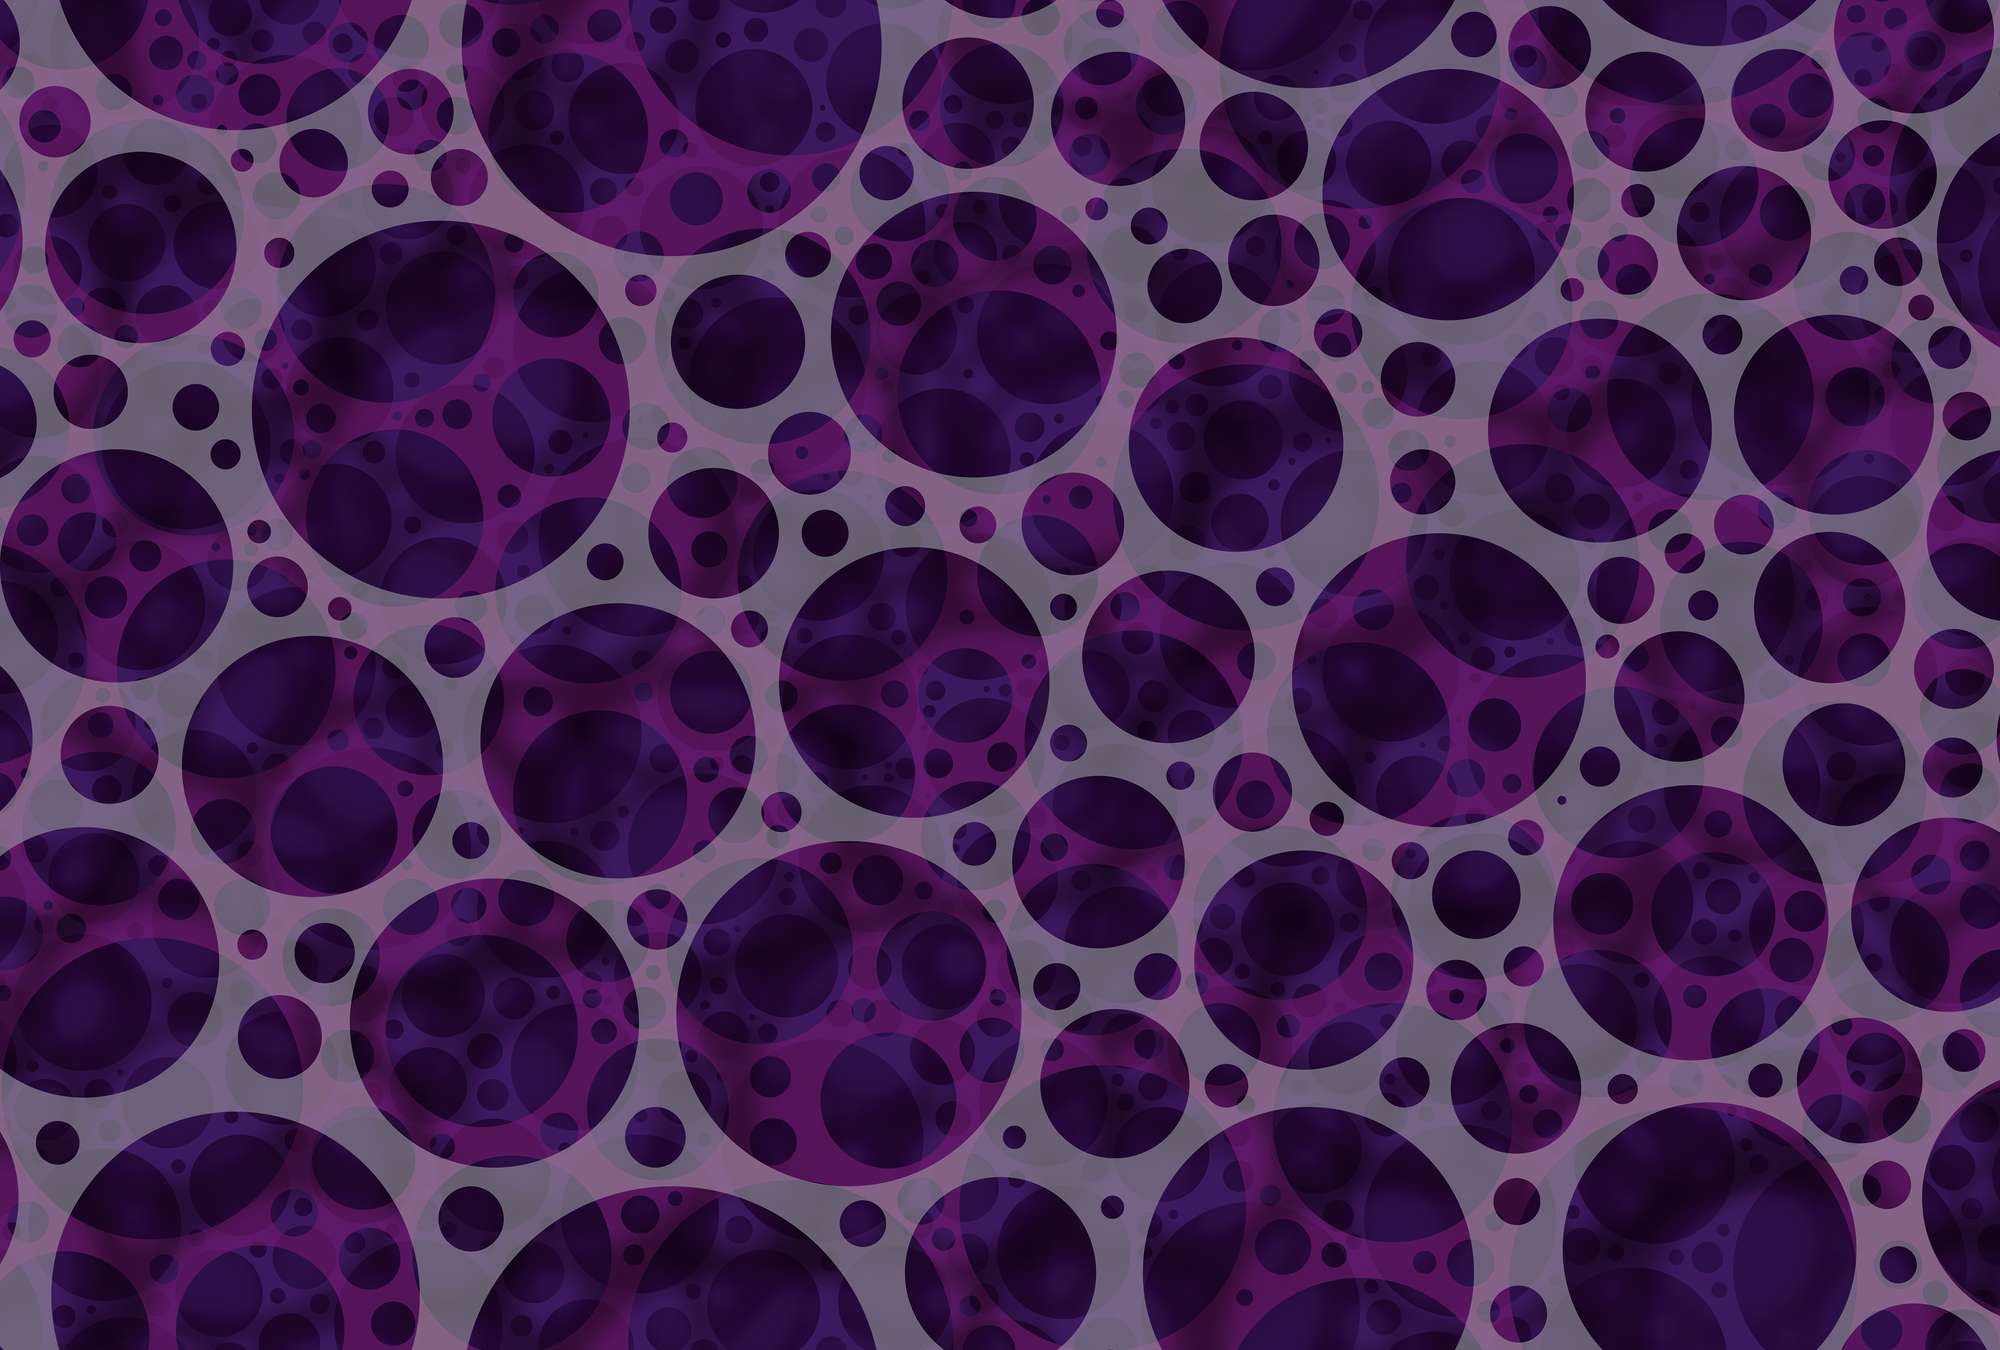             Papier peint avec des cercles violets - motifs circulaires
        